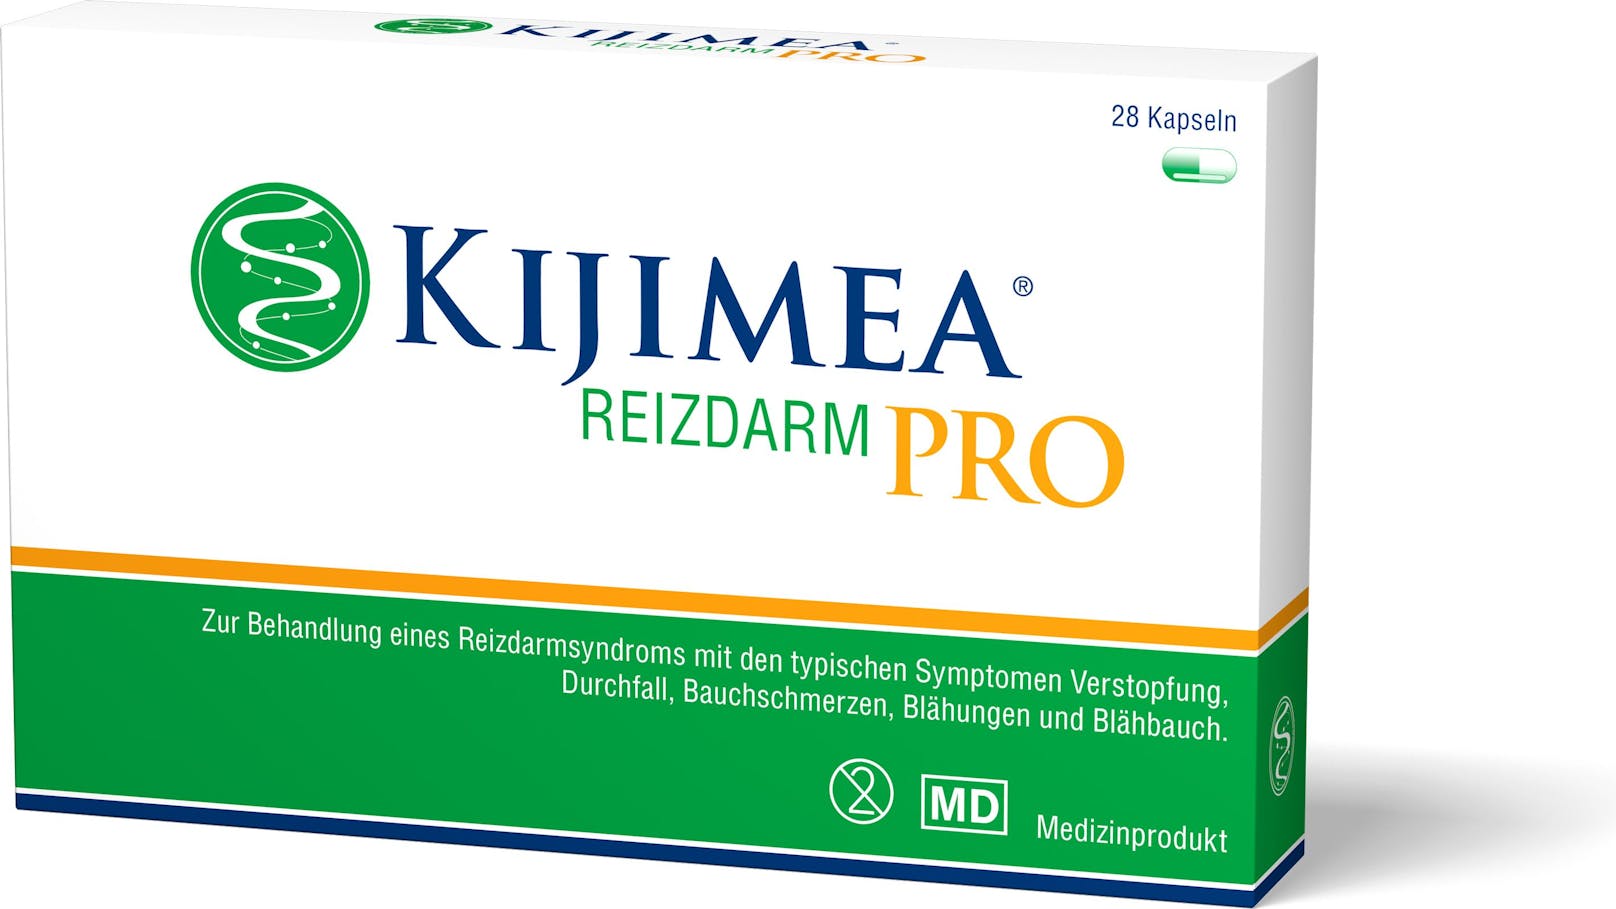 Kijimea Reizdarm PRO ist das meistverwendete Präparat bei Reizdarm in vielen europäischen Ländern.